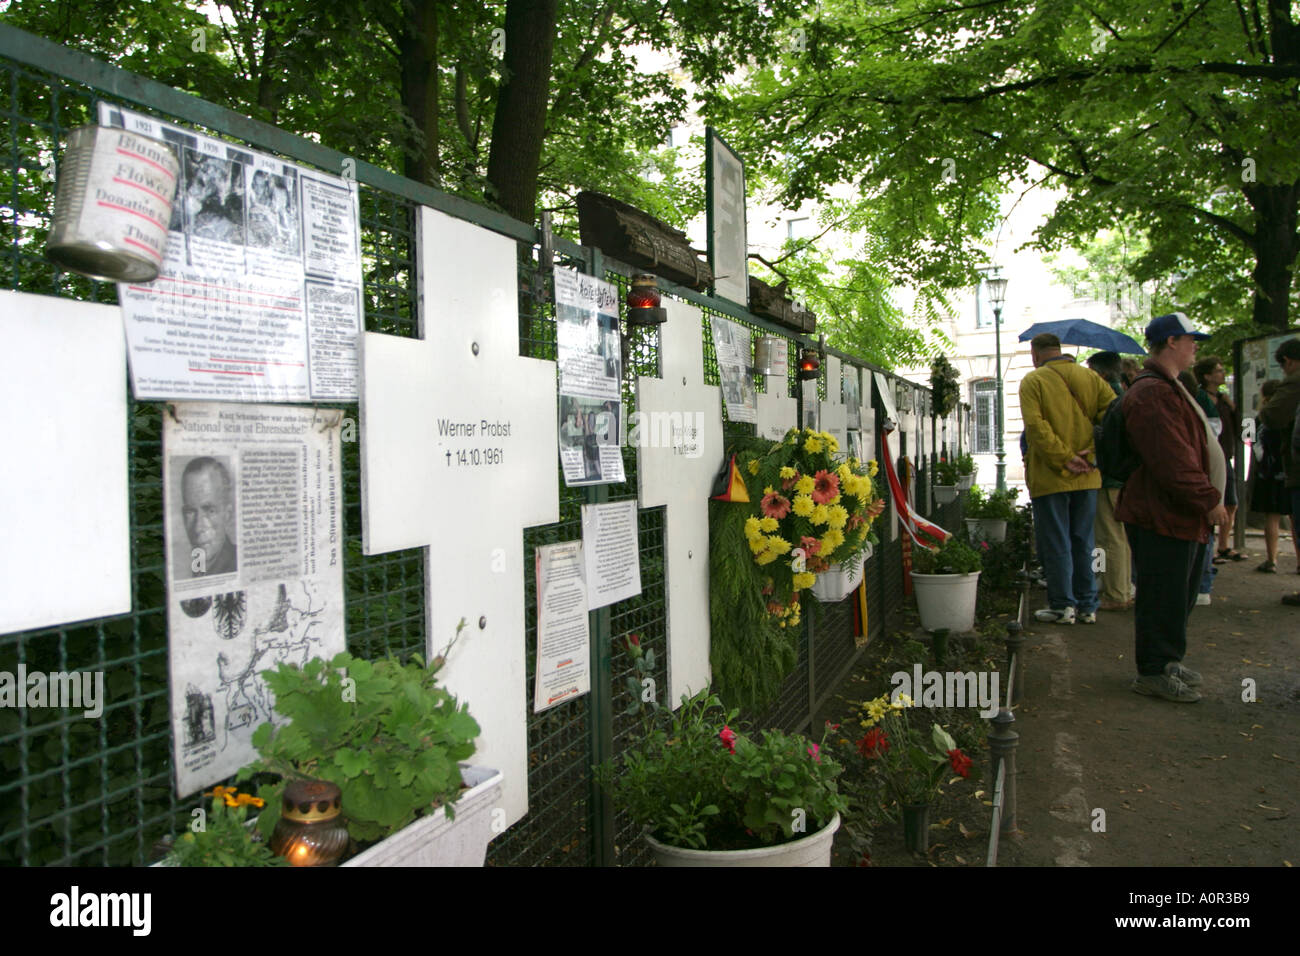 Denkmal für Menschen, die starben während der russischen Besetzung der Ost-Berliner in Berlin Deutschland Stockfoto